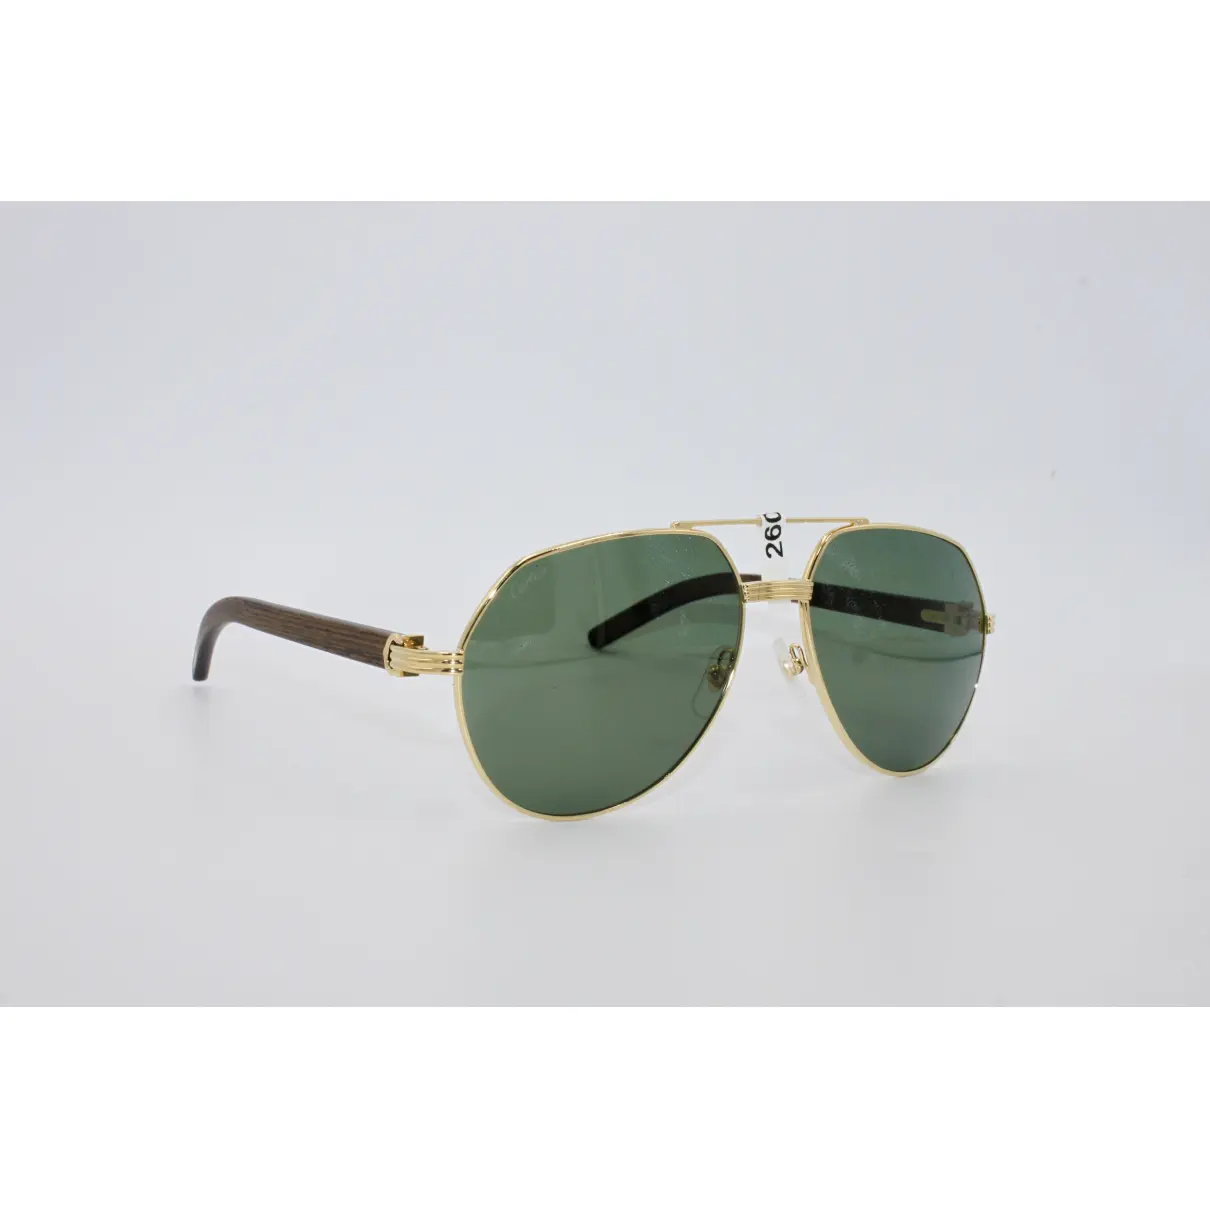 Buy Cartier Sunglasses online